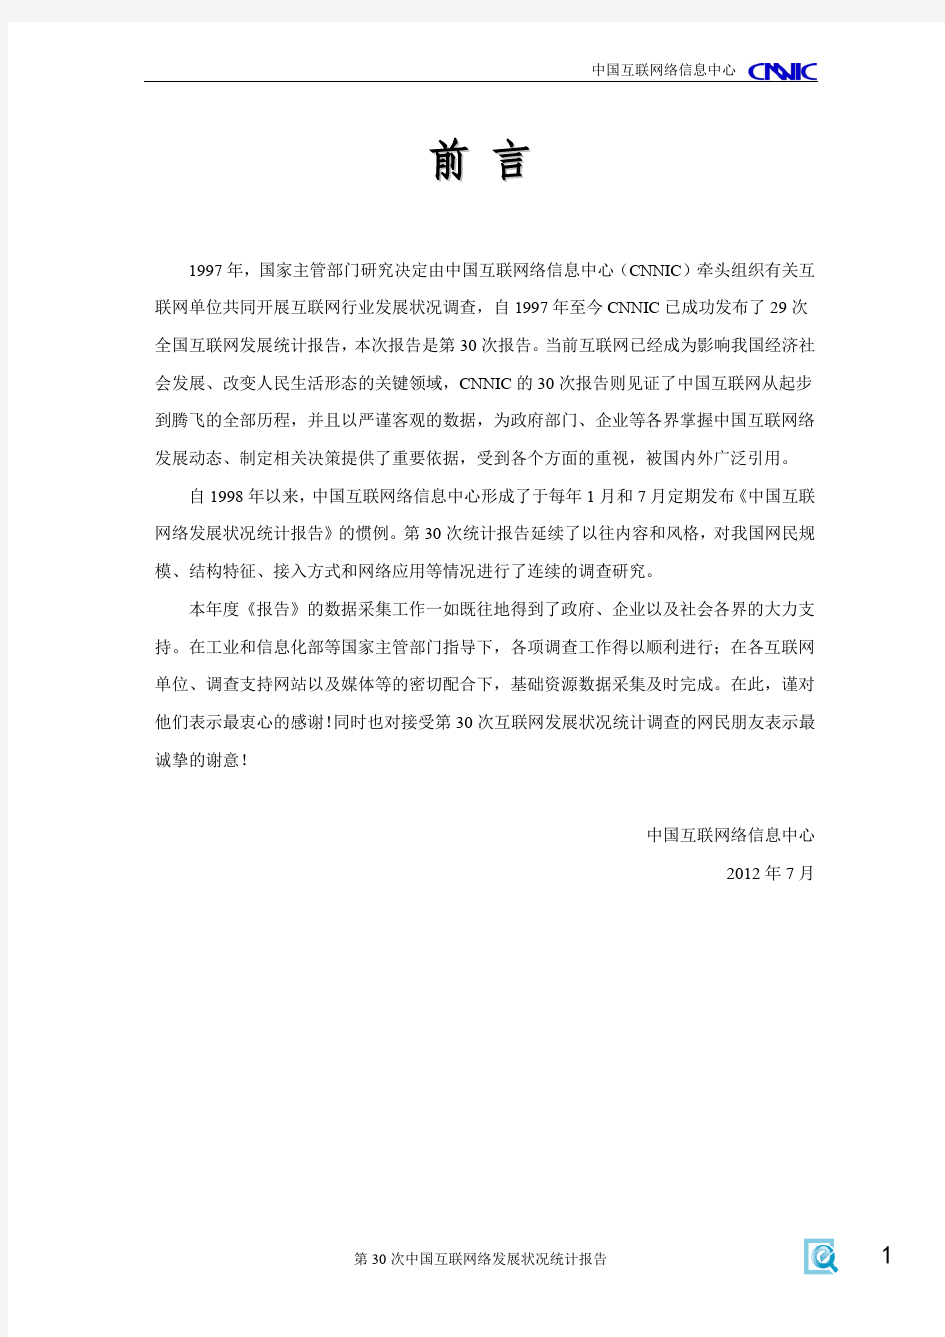 第30次CNNIC中国互联网发展统计报告